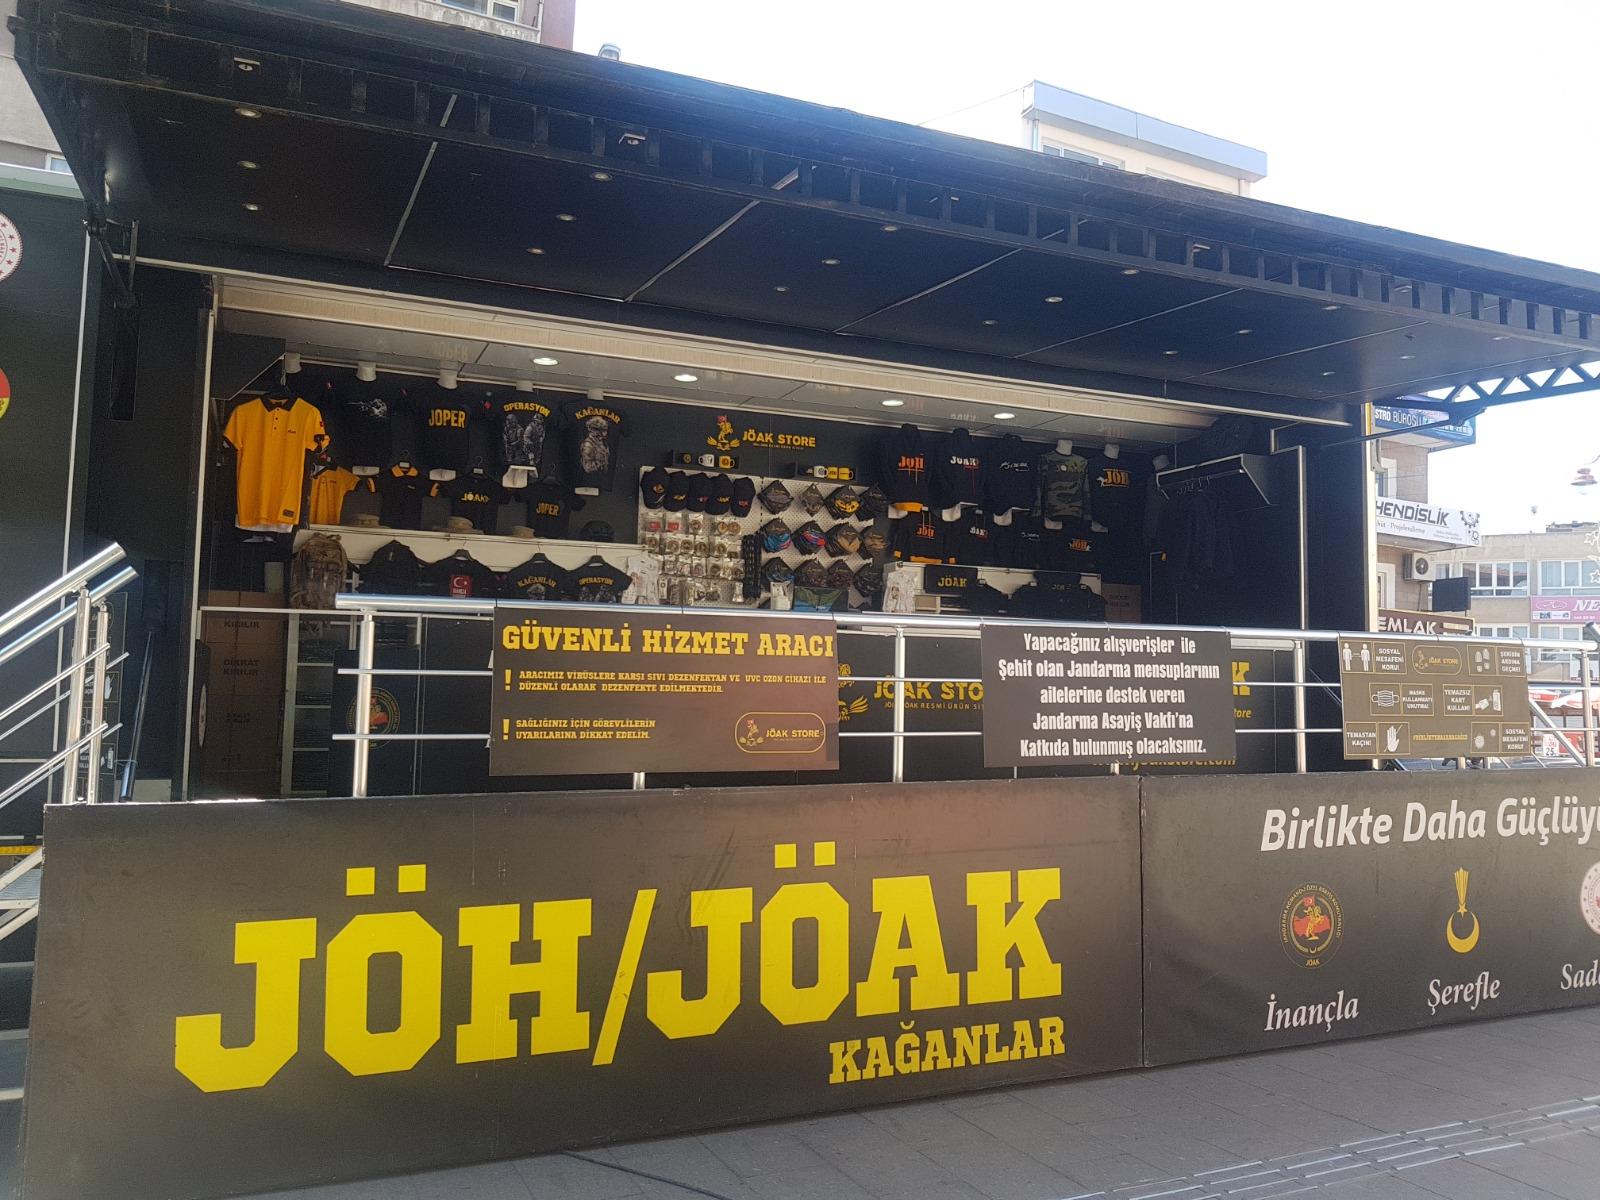 Jöak Store mobil satış aracı Afyon'a geliyor